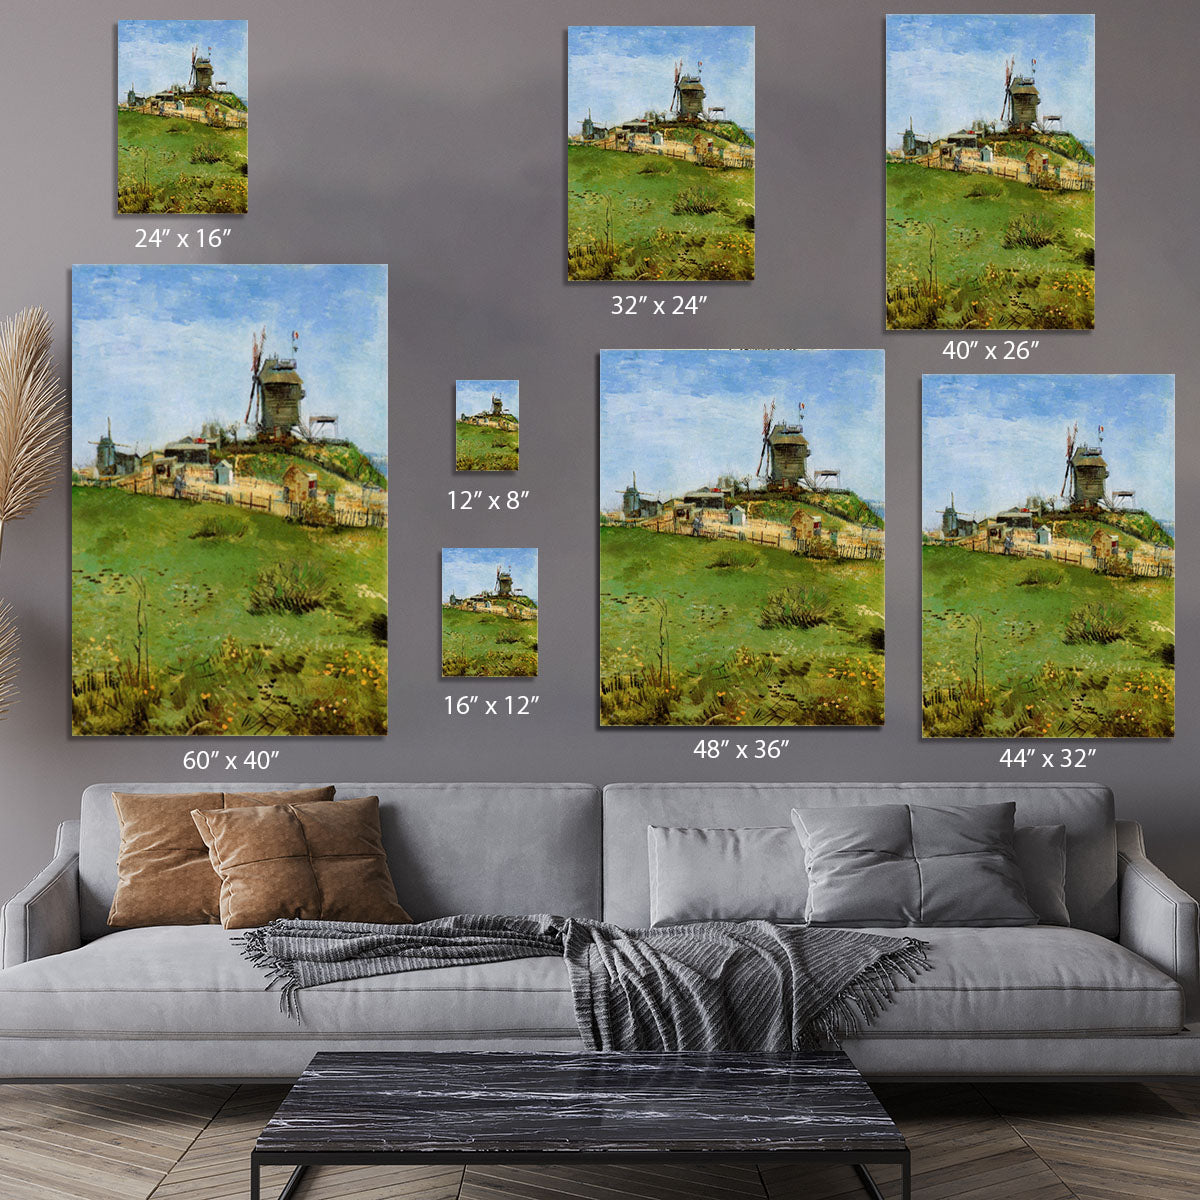 Le Moulin de la Galette 4 by Van Gogh Canvas Print or Poster - Canvas Art Rocks - 7